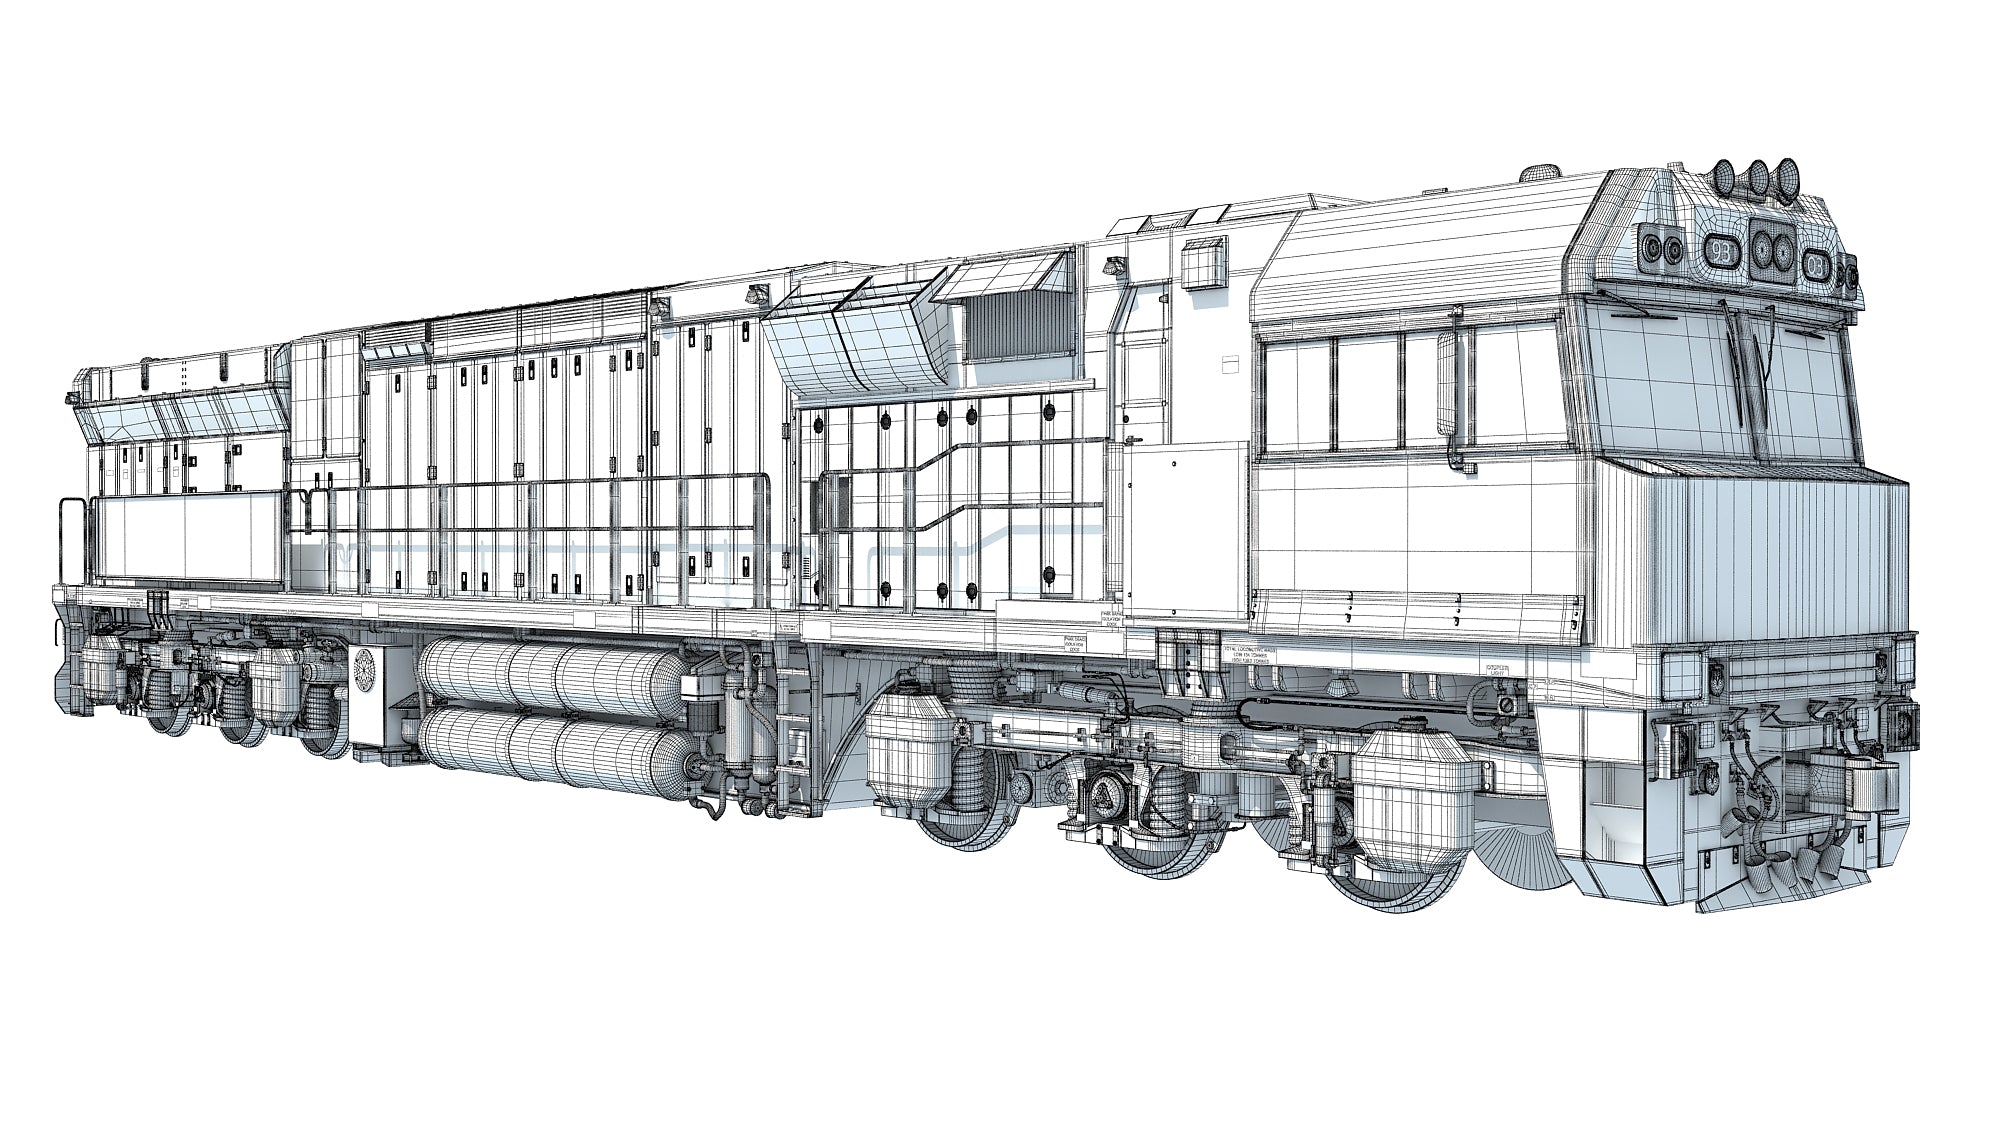 Electric Locomotive C44aci